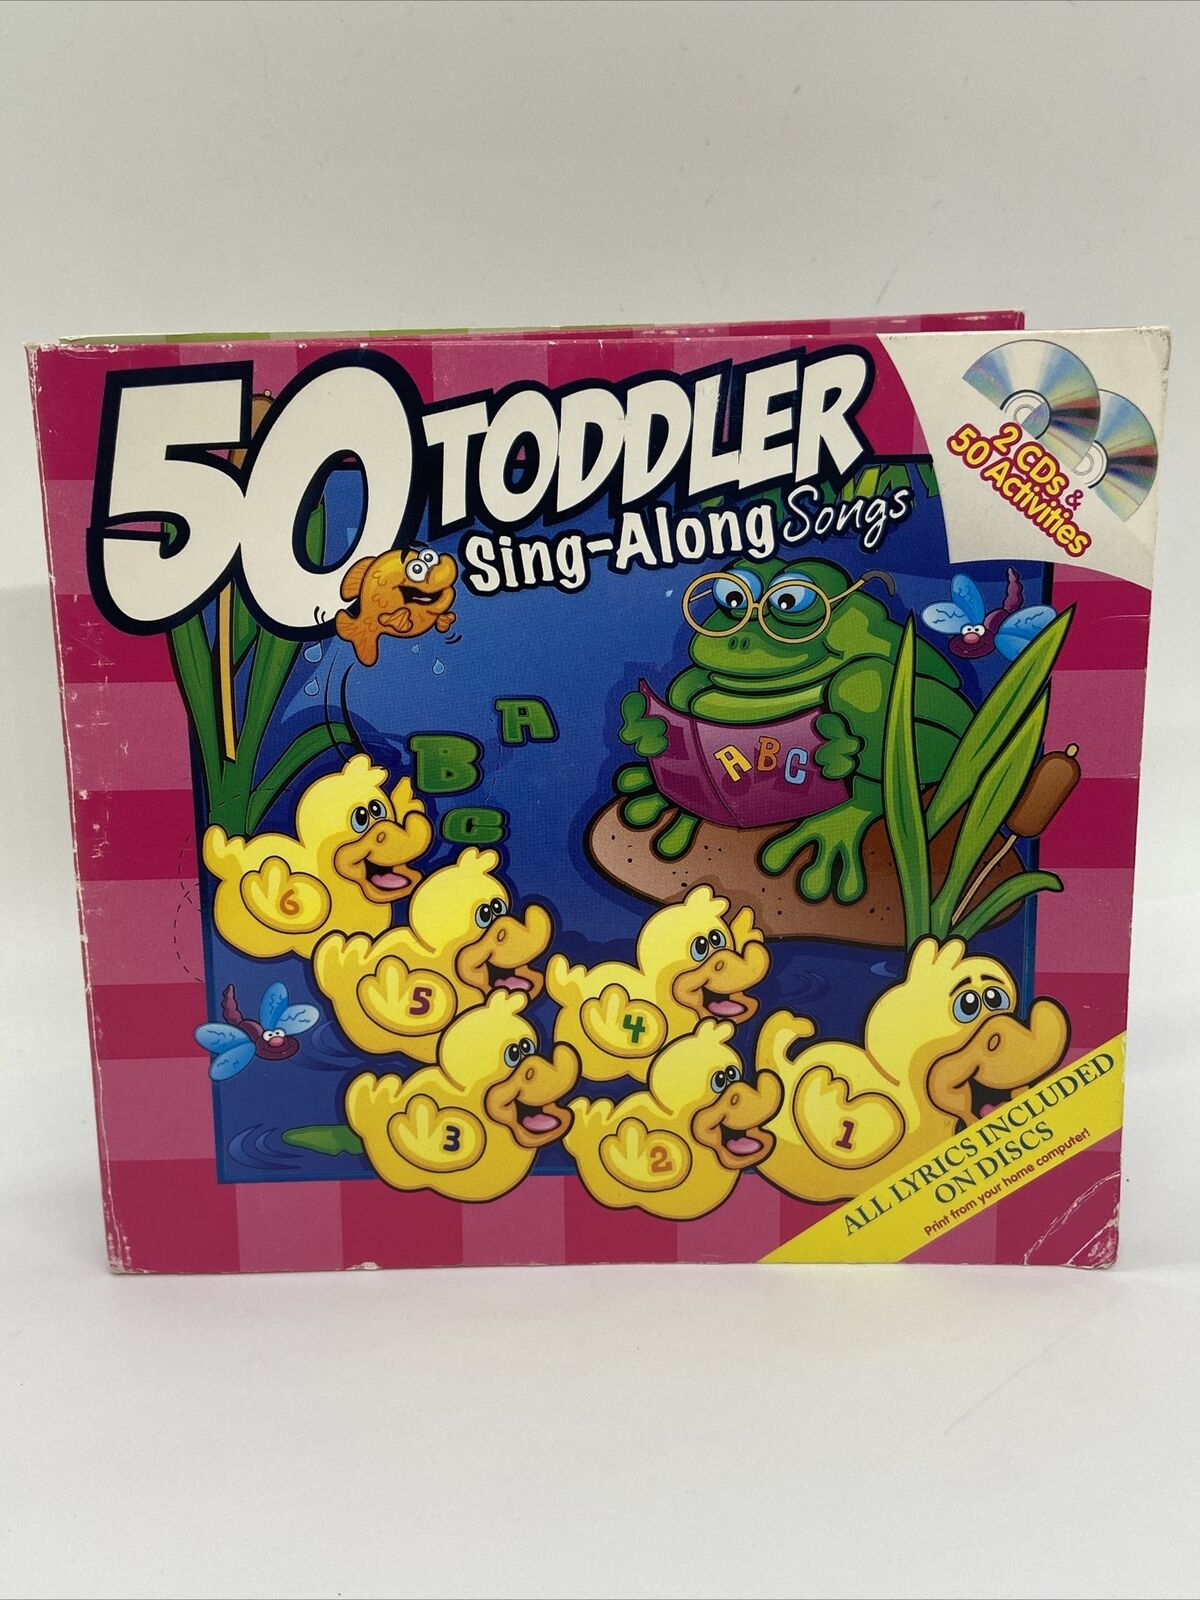 50 Toddler Sing-Along Songs - CD